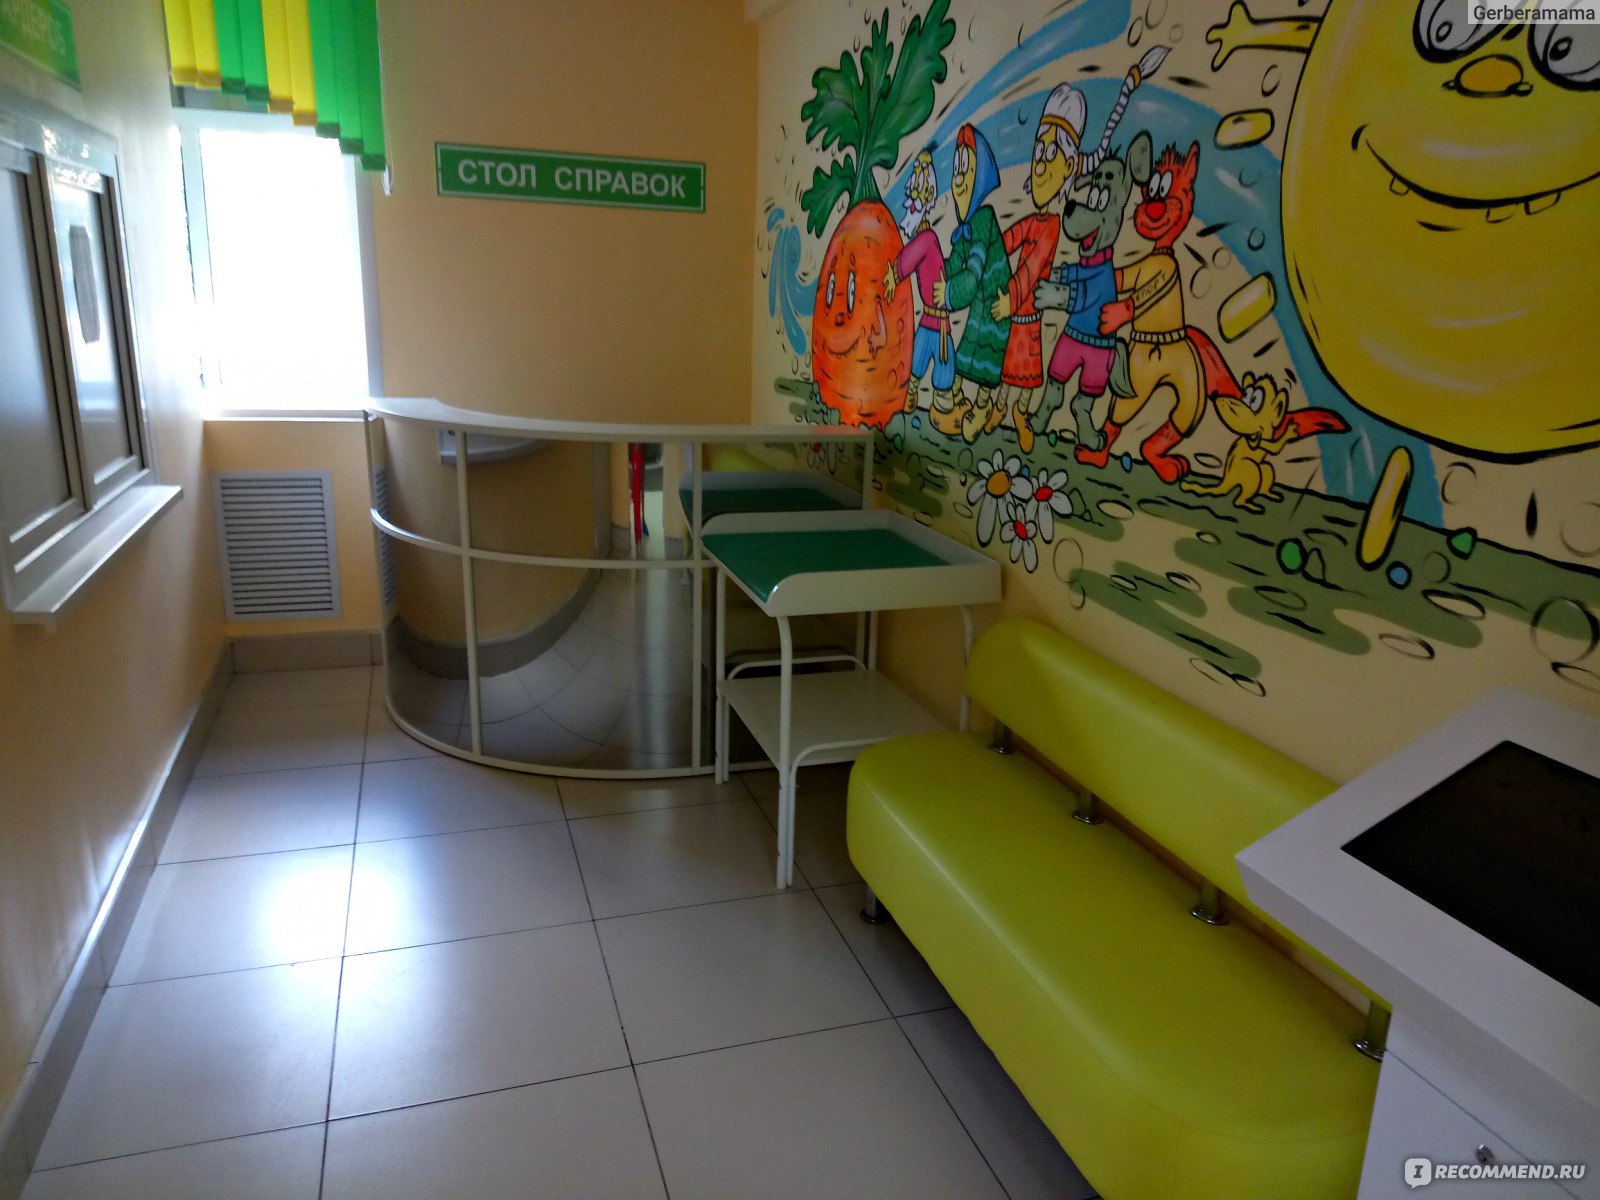 Стол справок детской поликлиники на трибуца